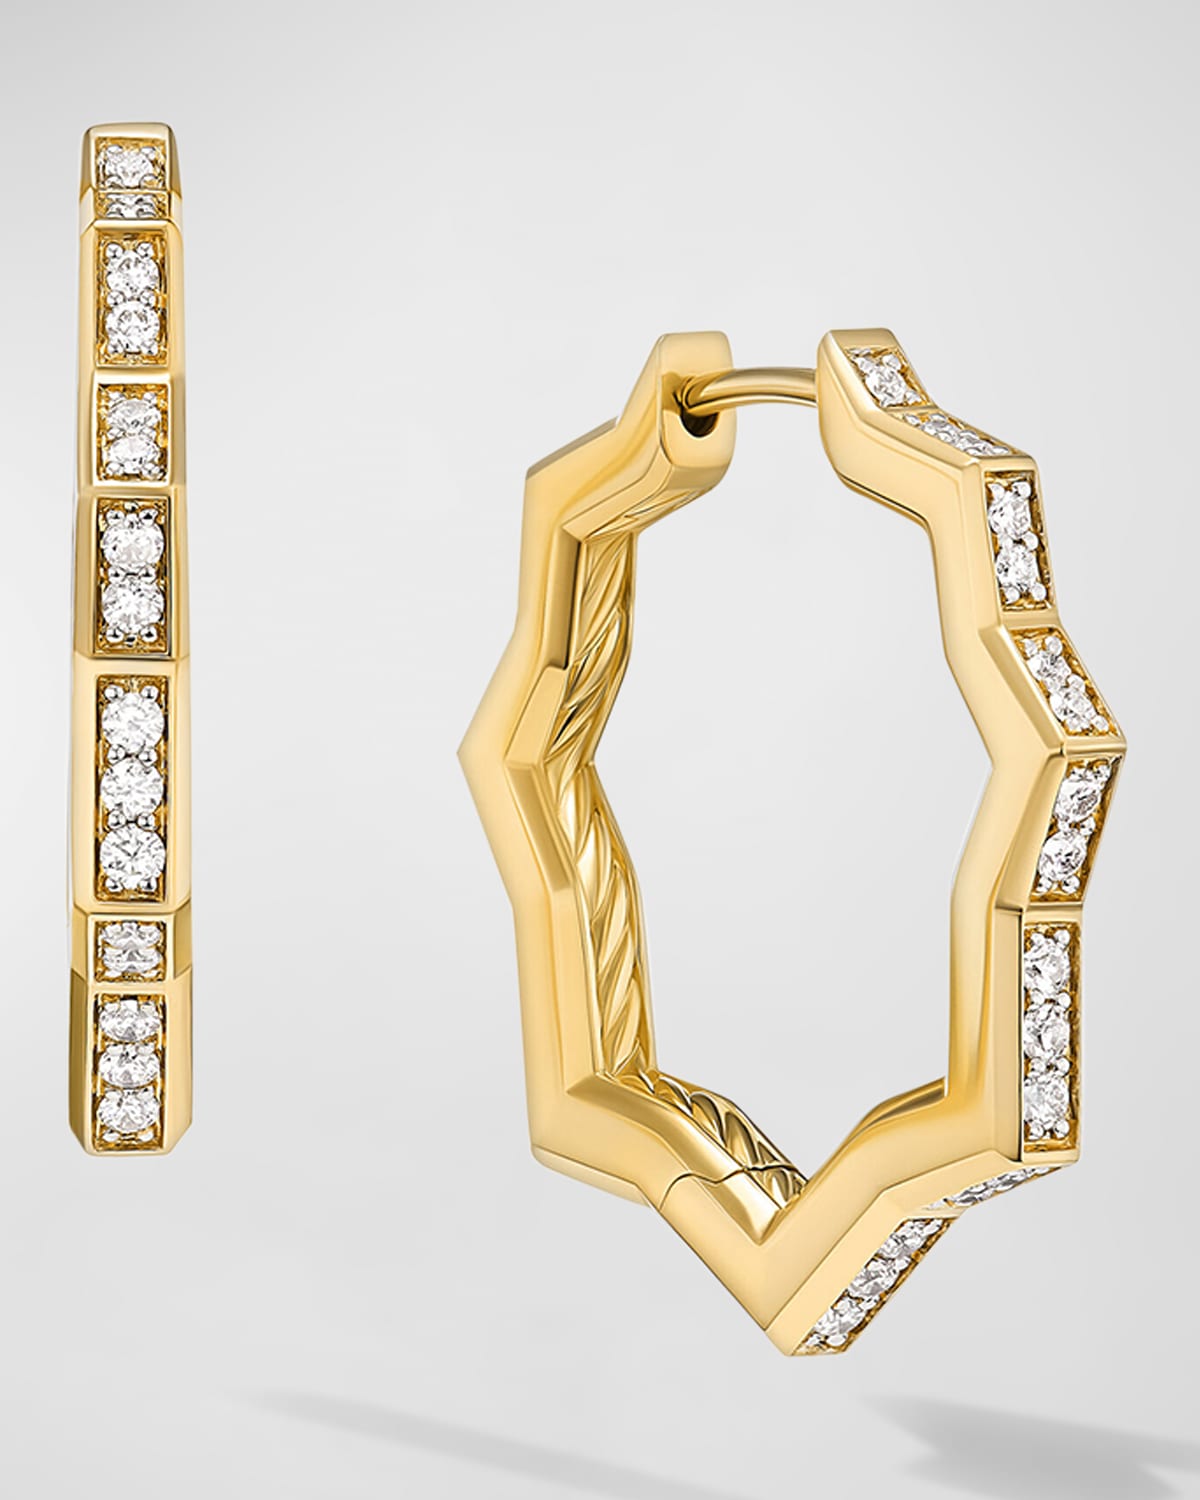 Zig Zag Stax Hoop Earrings with Diamonds in 18K Gold, 2.6mm